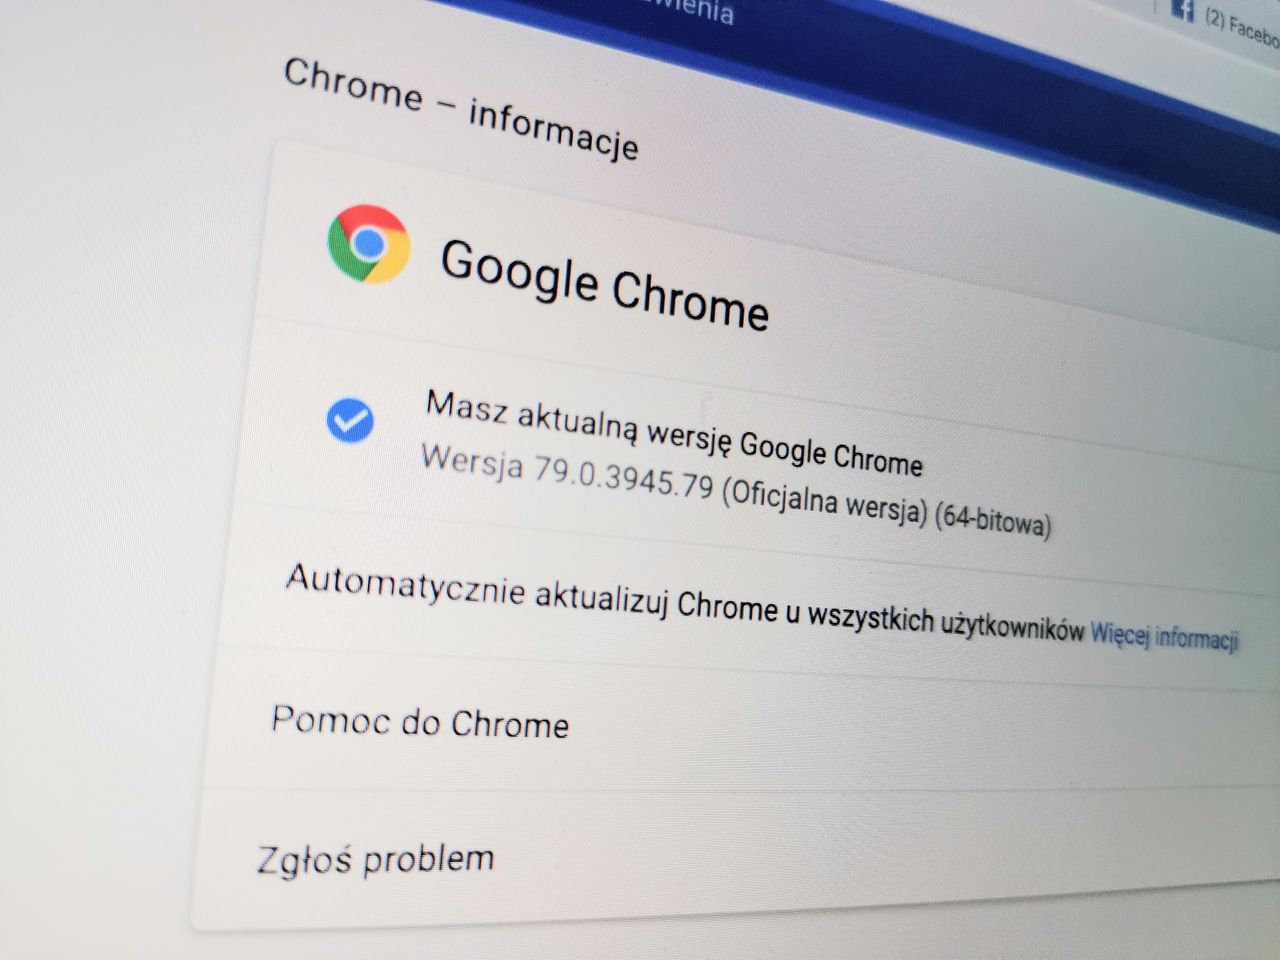 Google Chrome 79 „zamraża” karty, by twój laptop działał dłużej na baterii - Google Chrome 79 „zamraża” karty, by oszczędzać energię